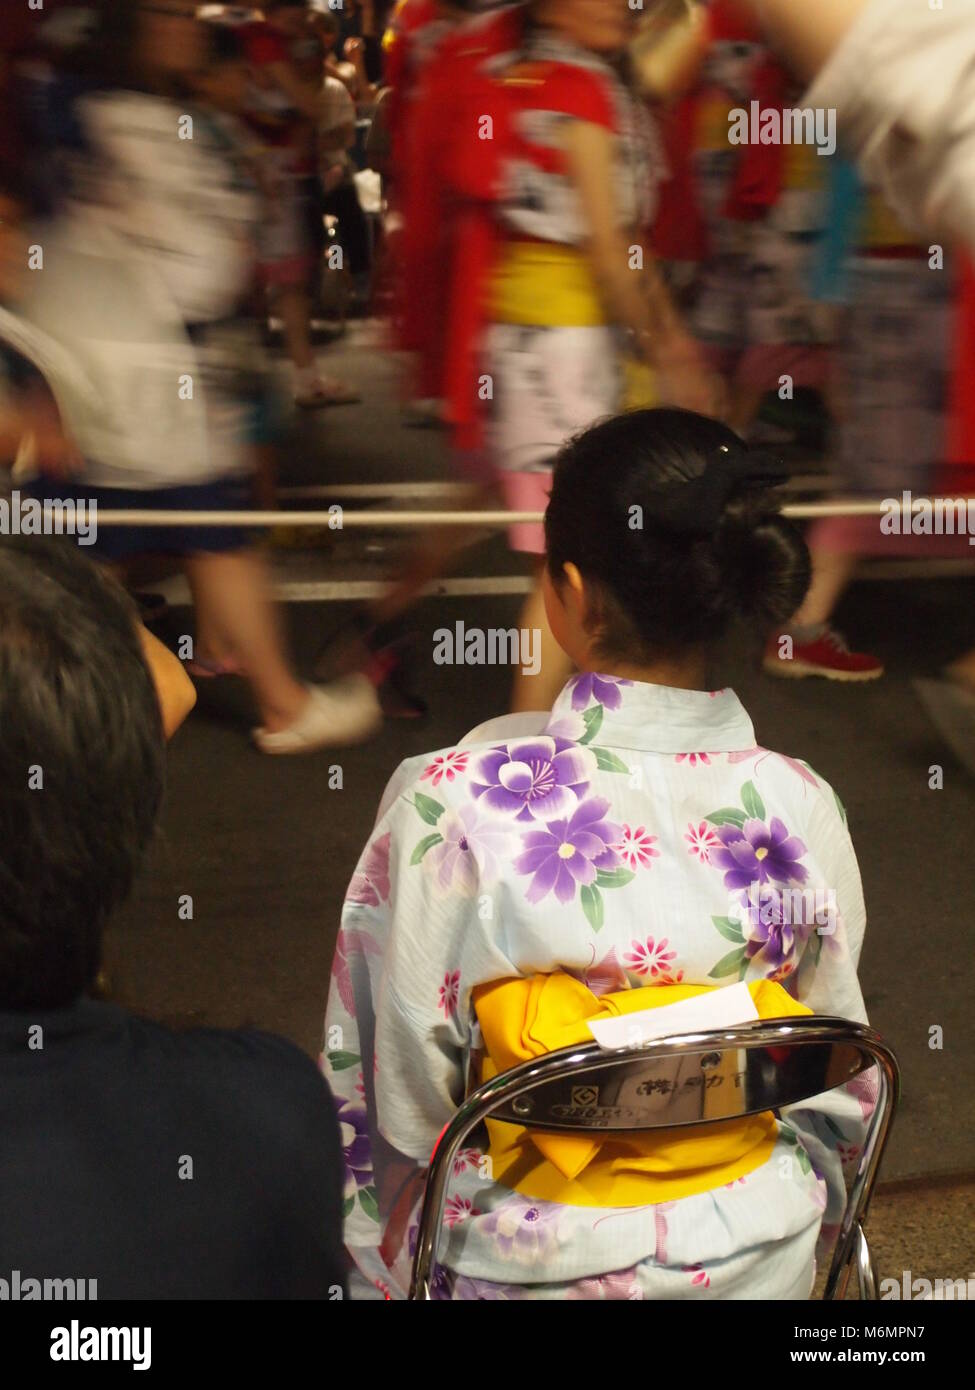 Festival of 'Nebuta Matsuri' in Aomori (Japan) Stock Photo